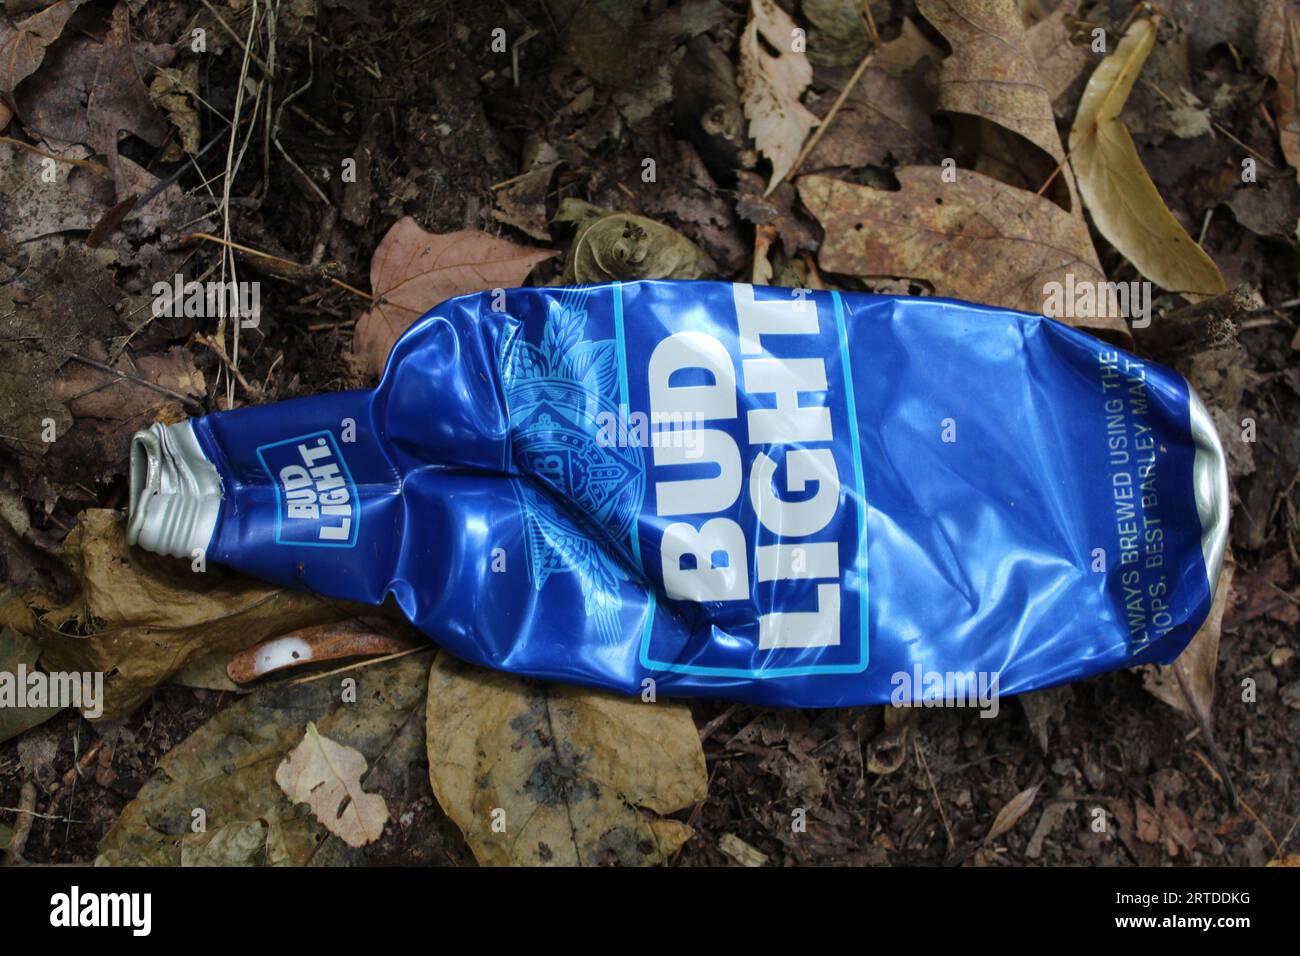 Bouteille d'interdiction de bière en aluminium Bud légère écrasée à Camp Ground Road Woods à des Plaines, Illinois Banque D'Images